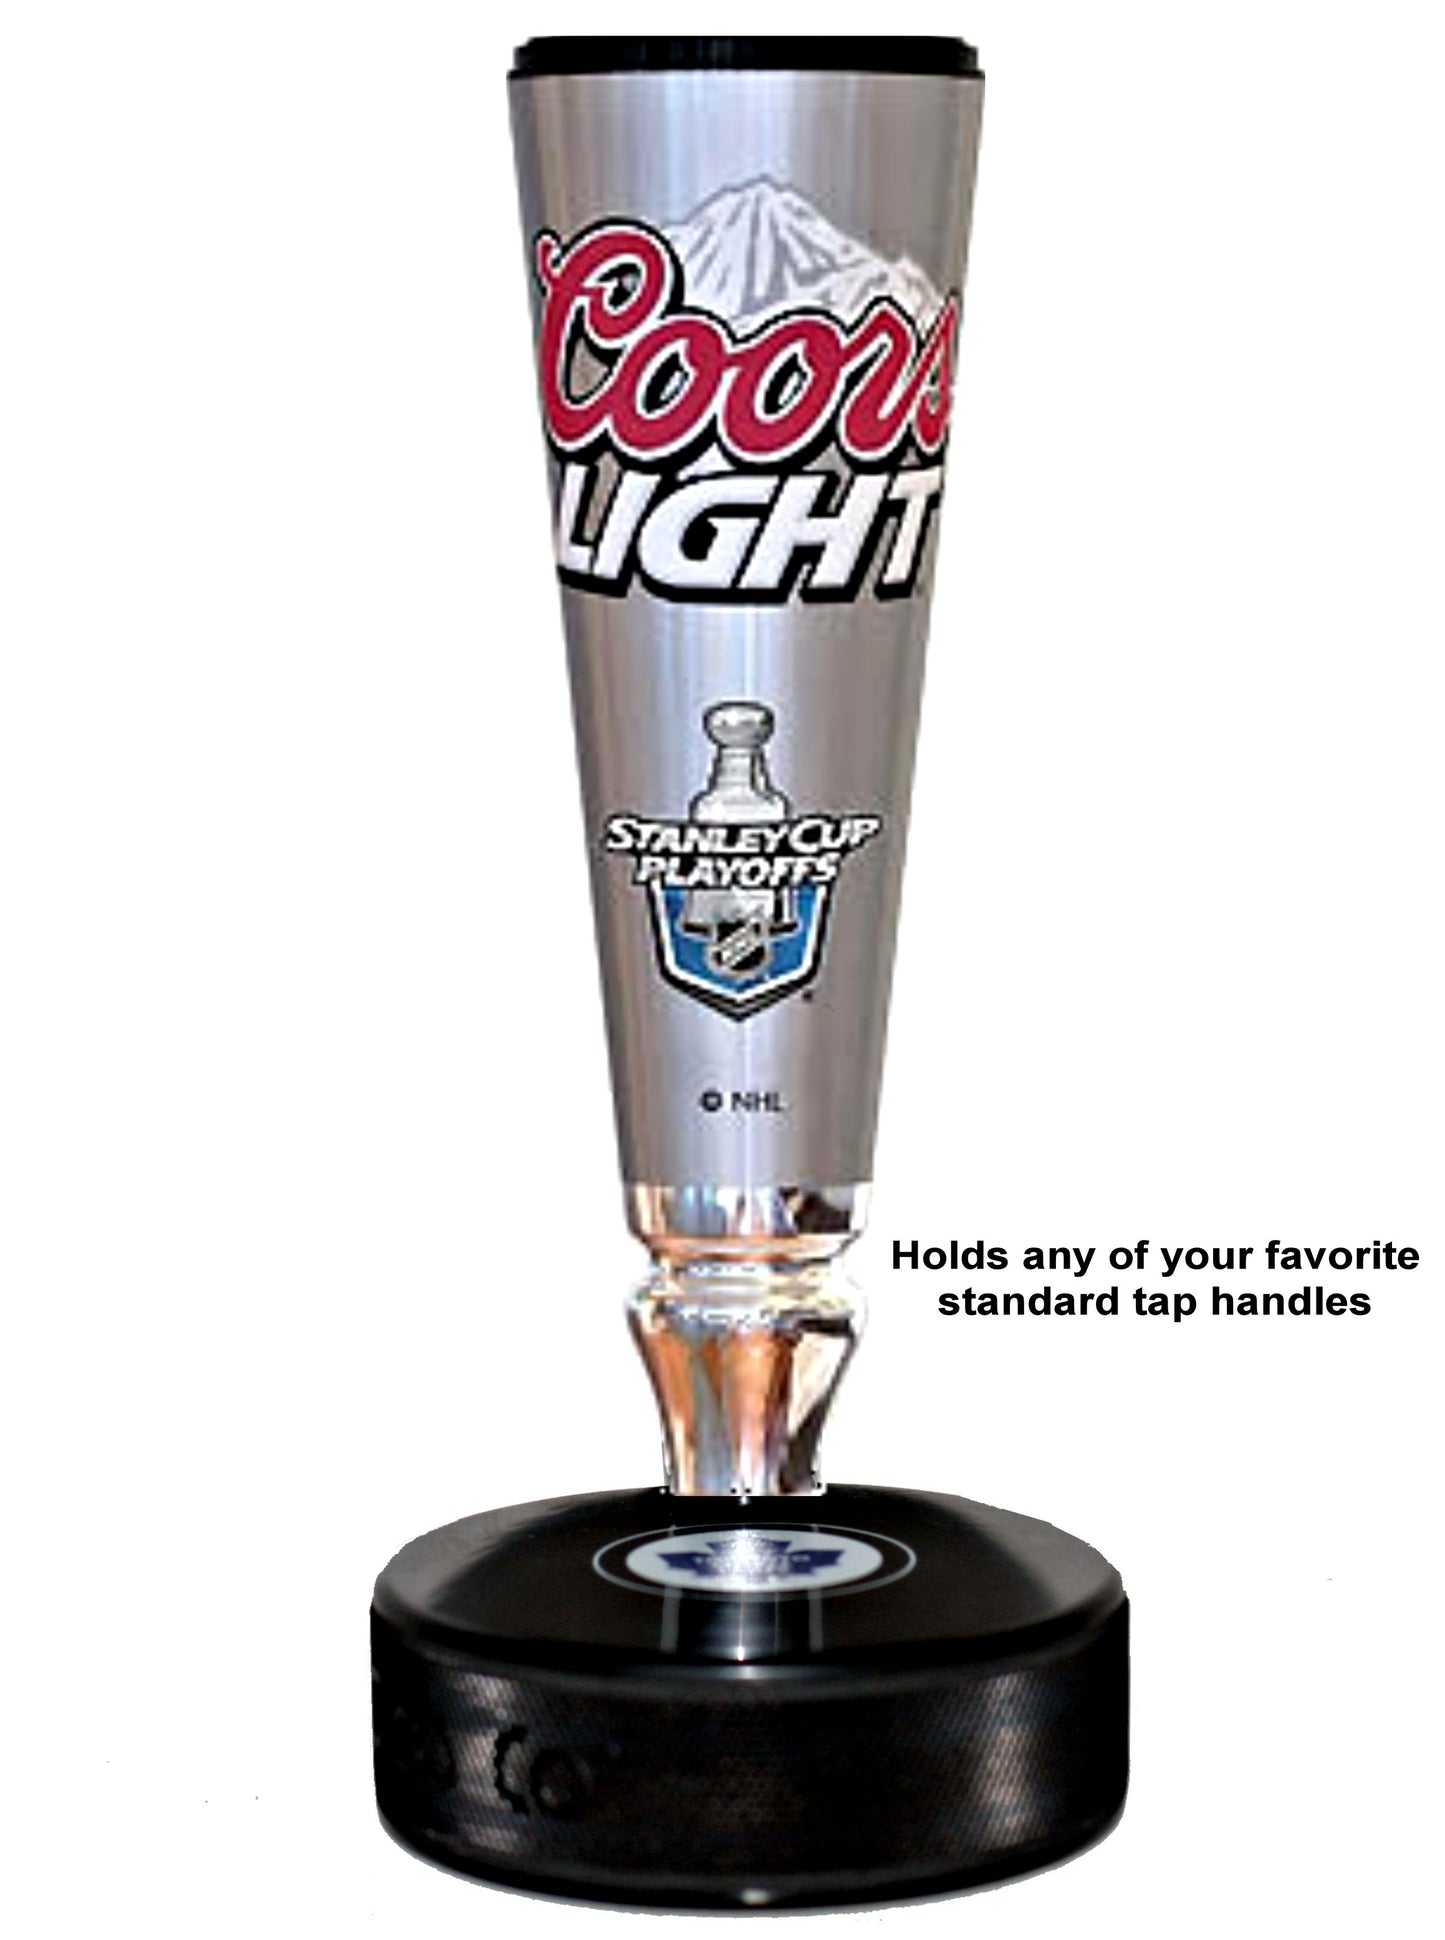 Detroit Red Wings Autograph Series Hockey Puck Beer Tap Handle Display